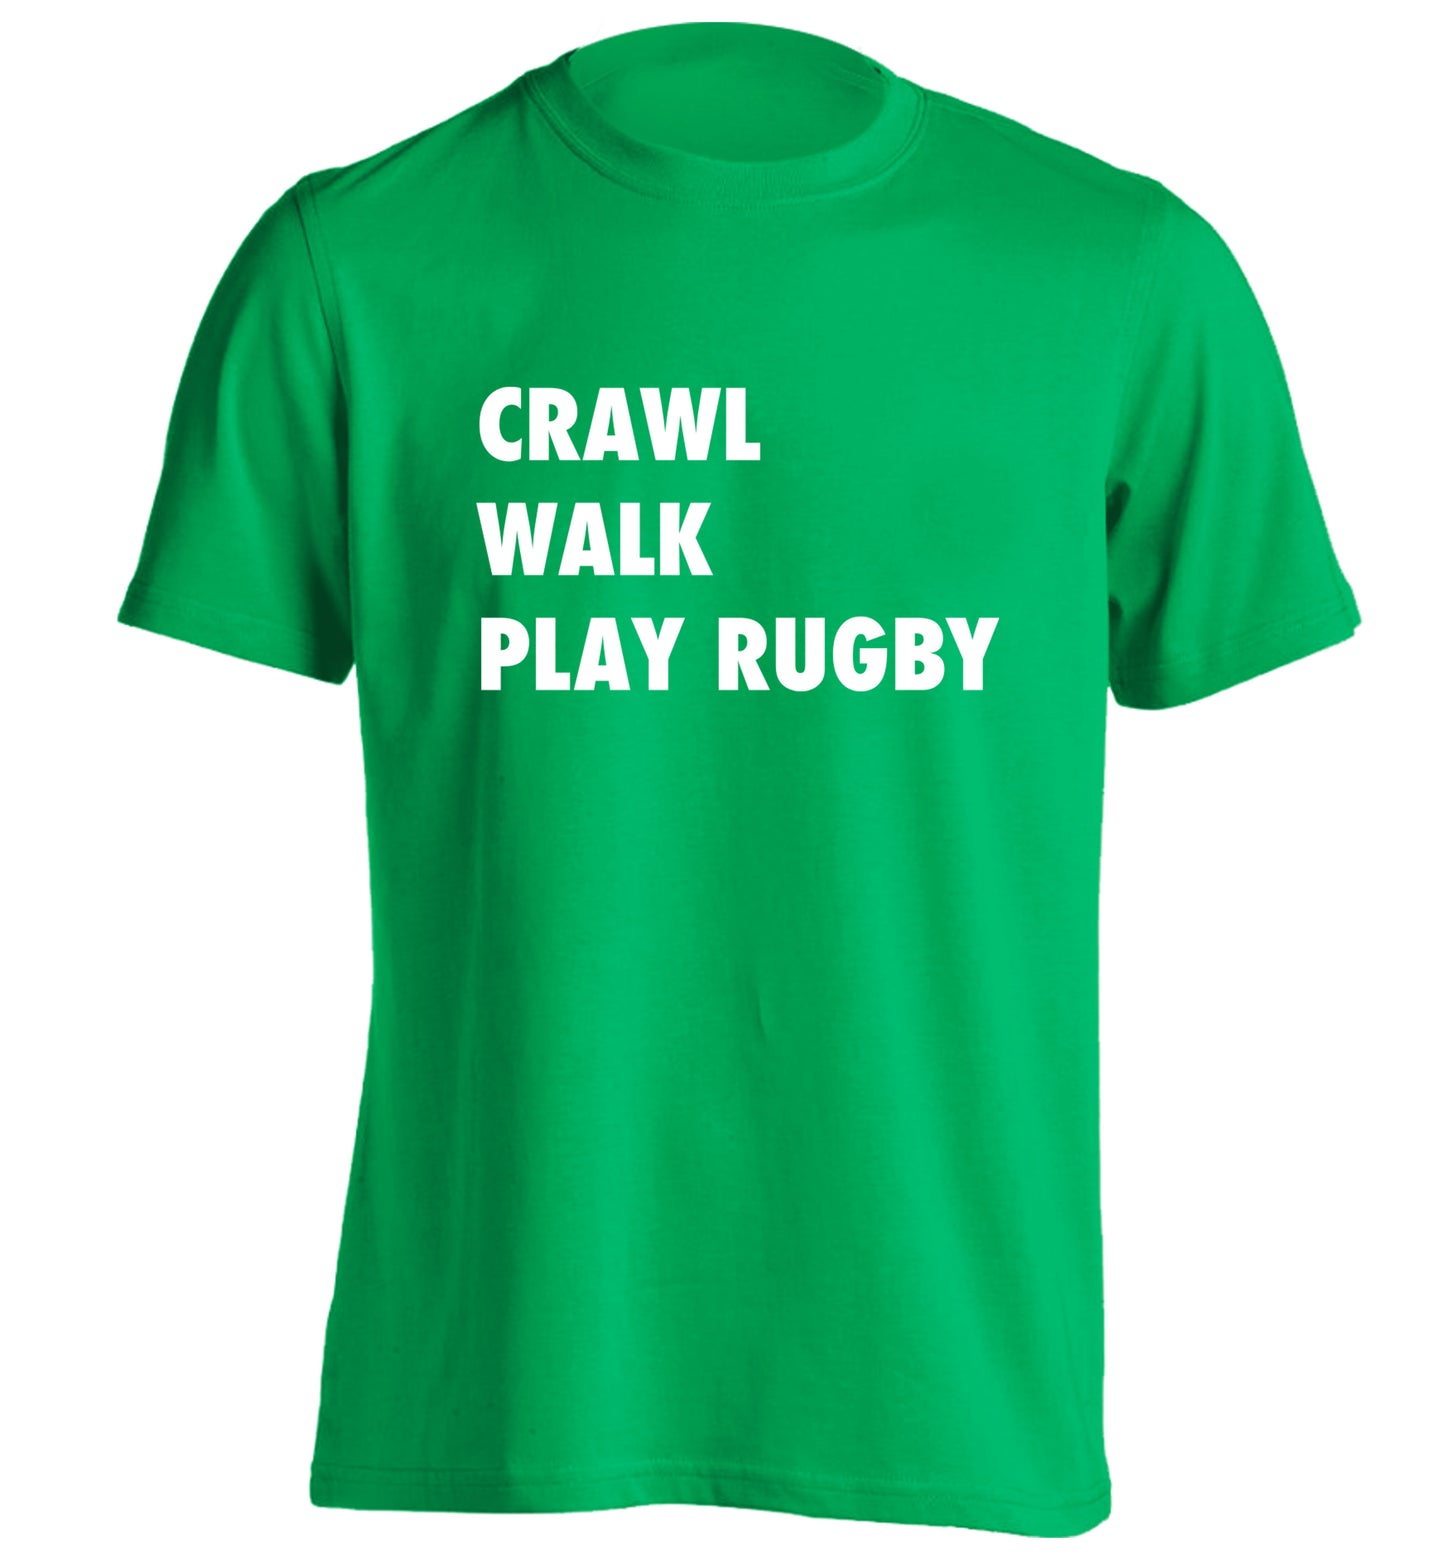 Eat, sleep, play rugby adults unisex green Tshirt 2XL